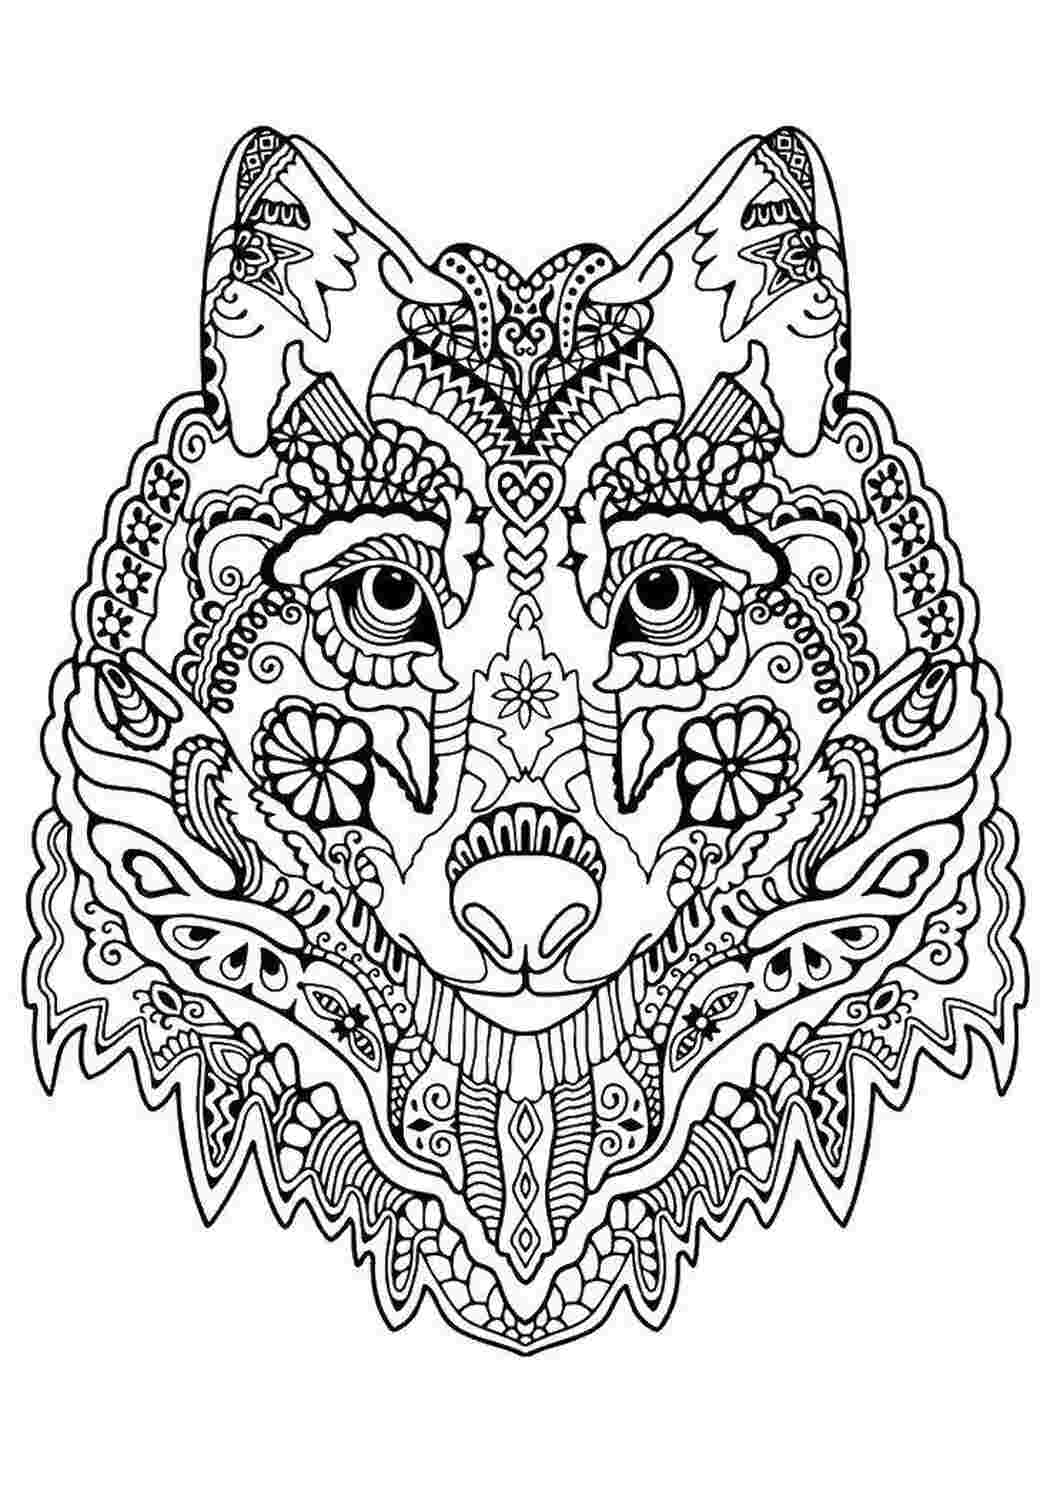 Раскраски Голова волка в узорах раскраски антистресс голова, волк, узоры